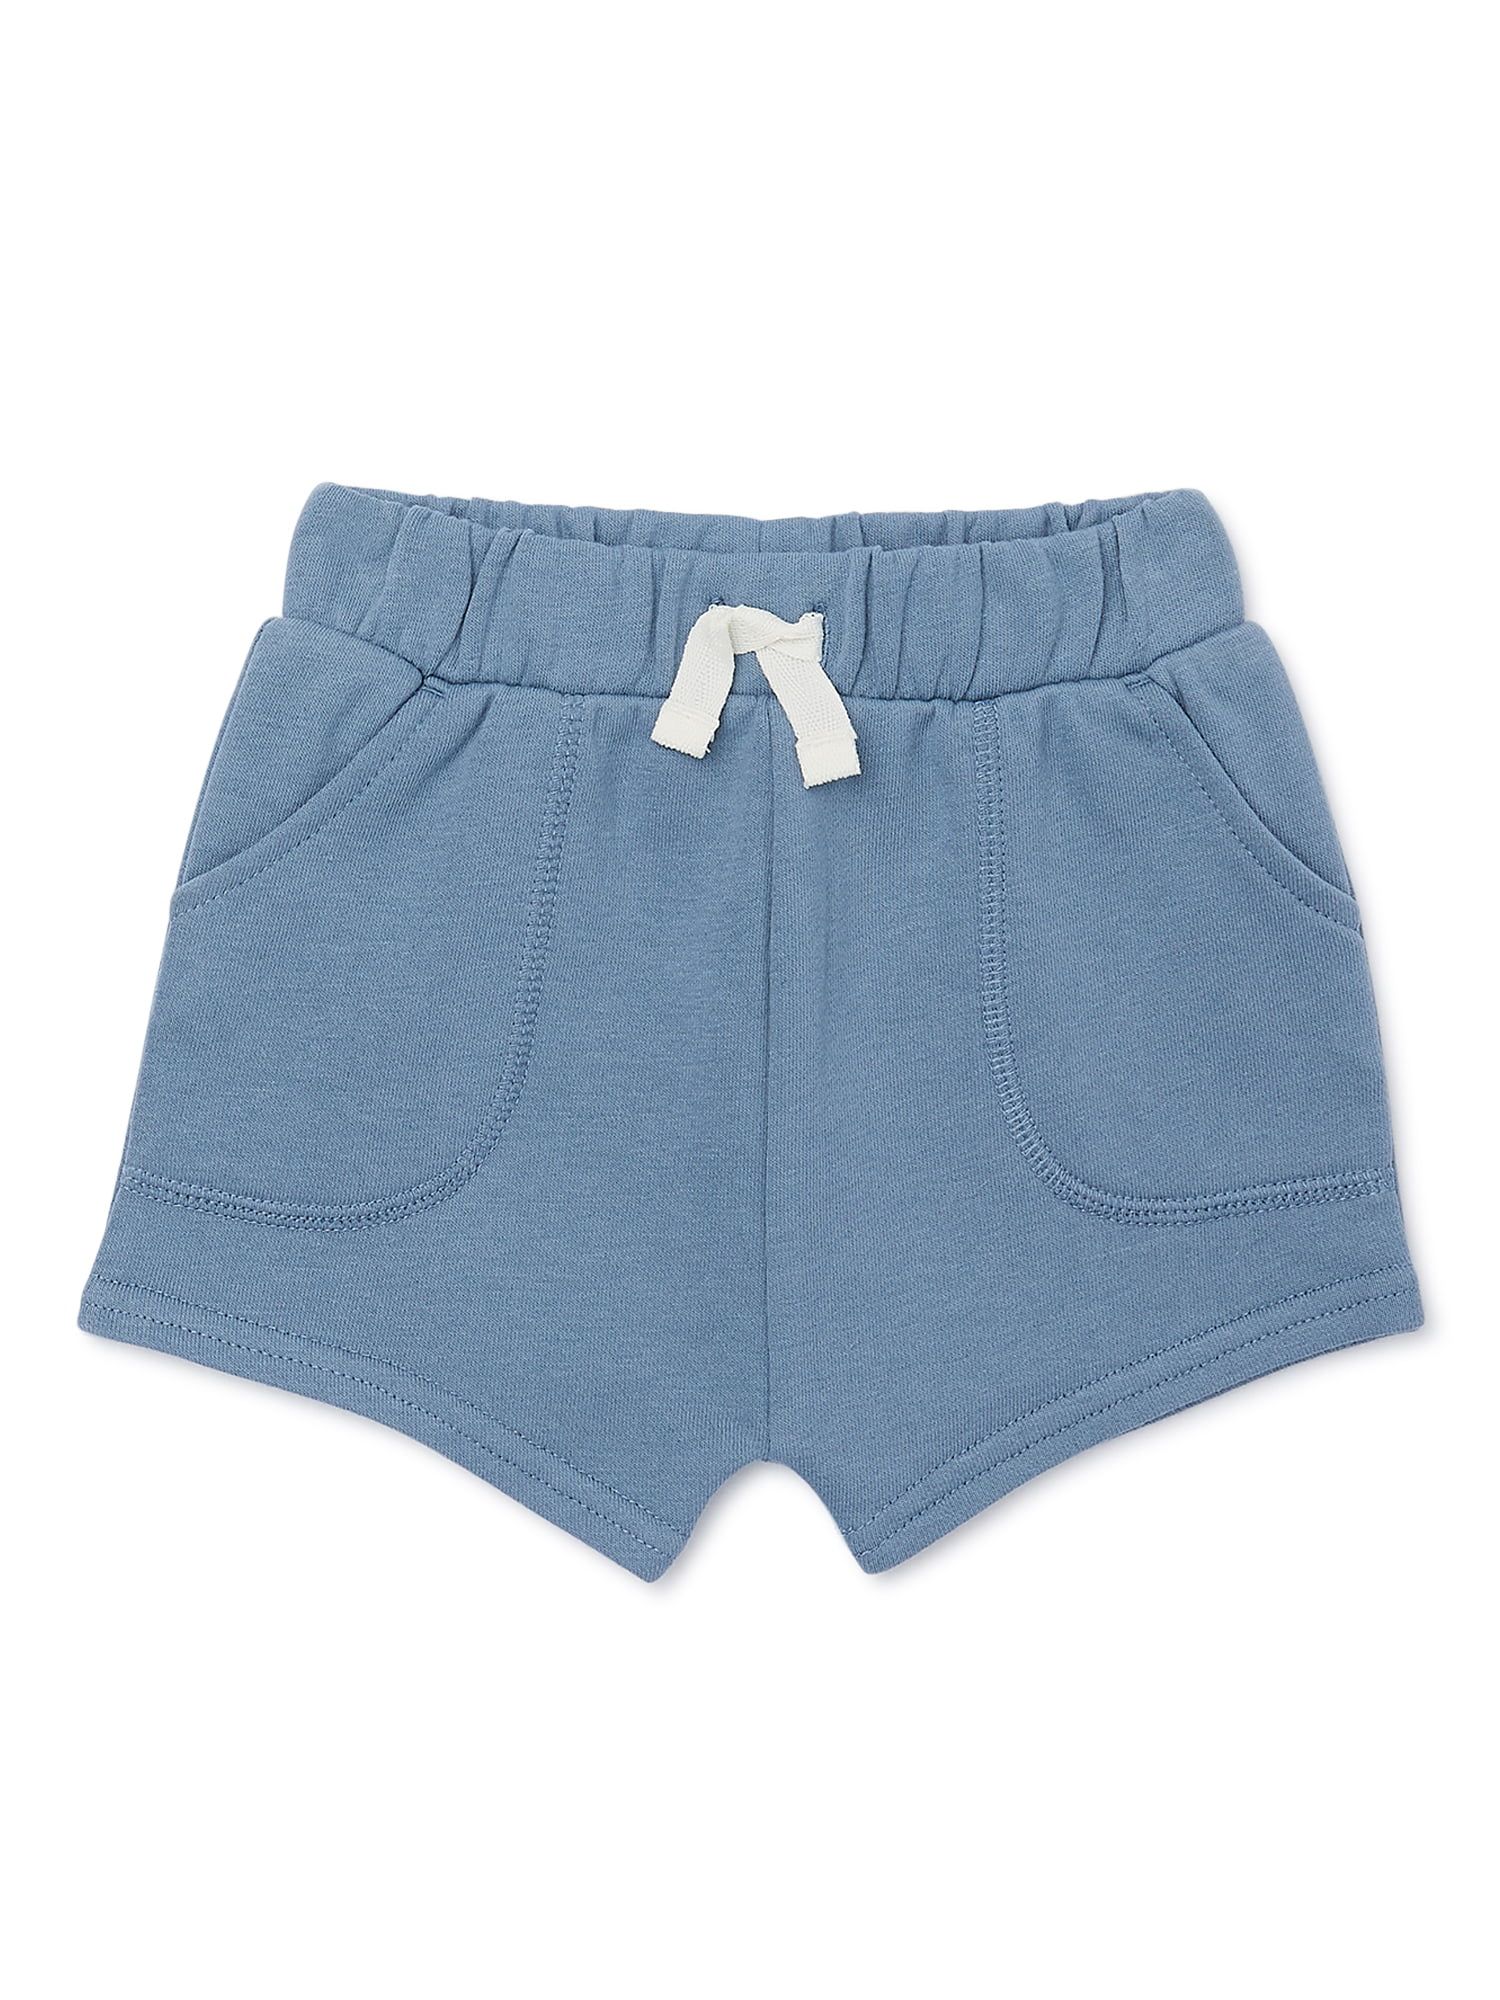 Garanimals Baby Boy French Terry Shorts, Sizes 0-24 Months | Walmart (US)